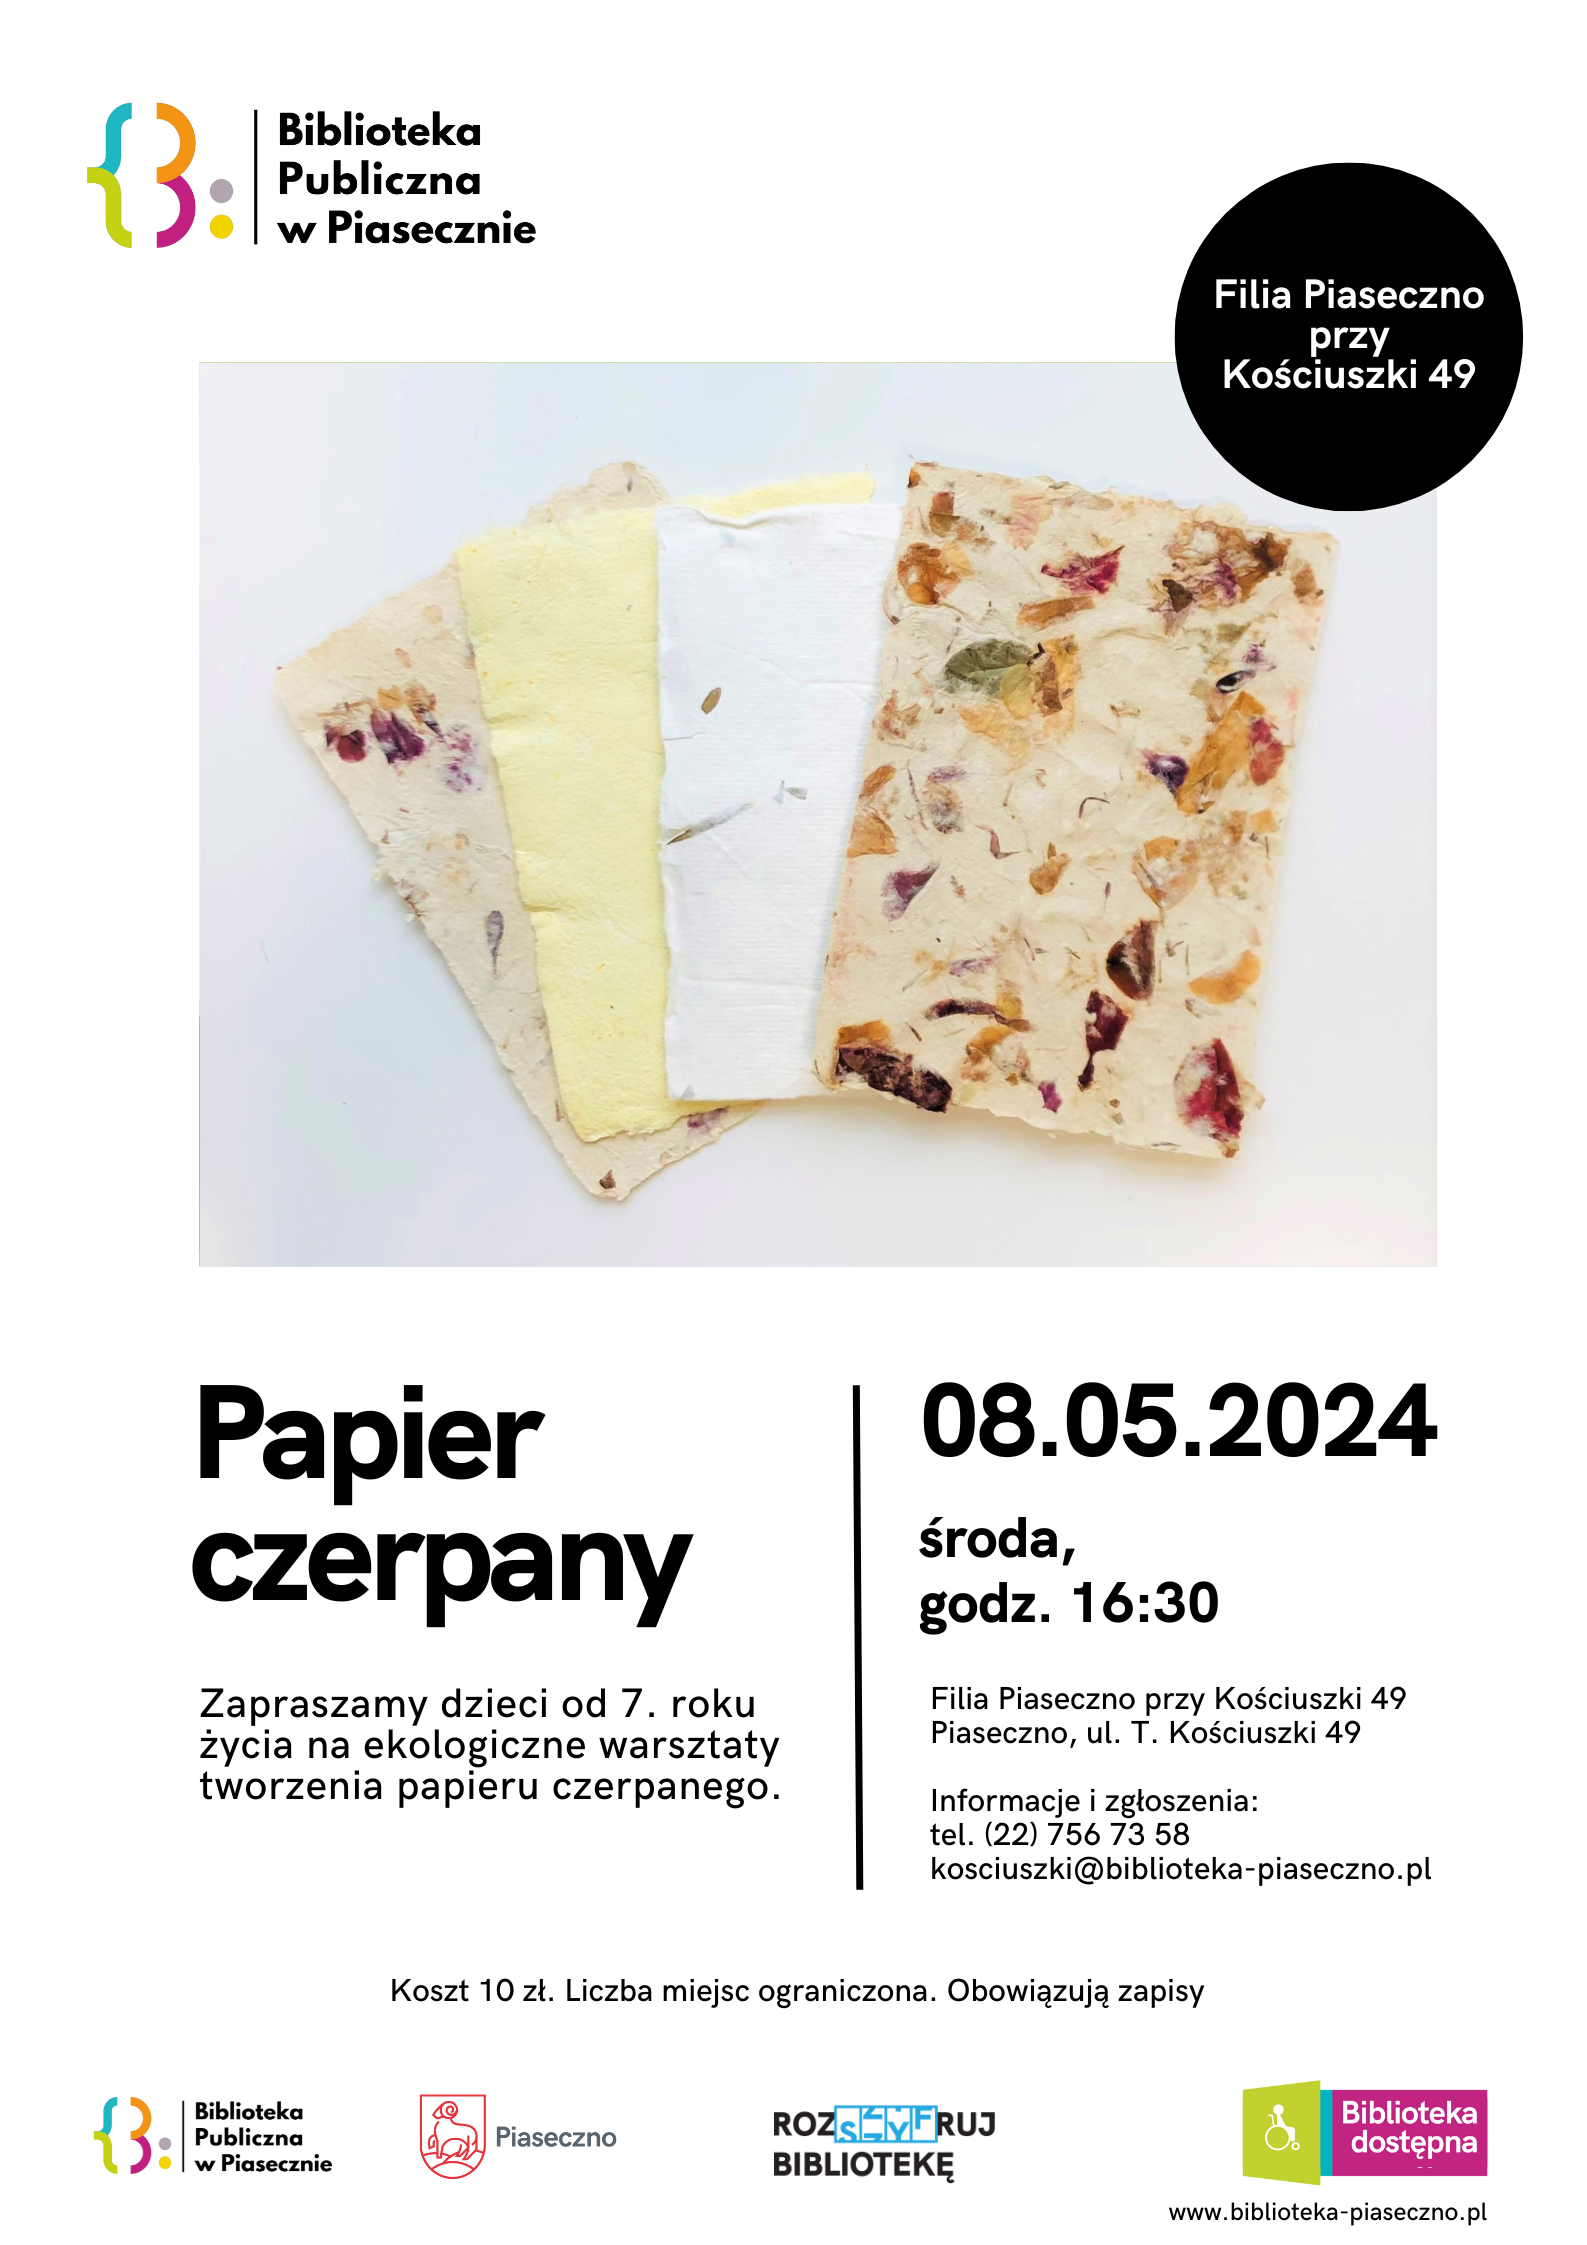 Plakat promujący ekologiczne warsztaty tworzenia papieru czerpanego